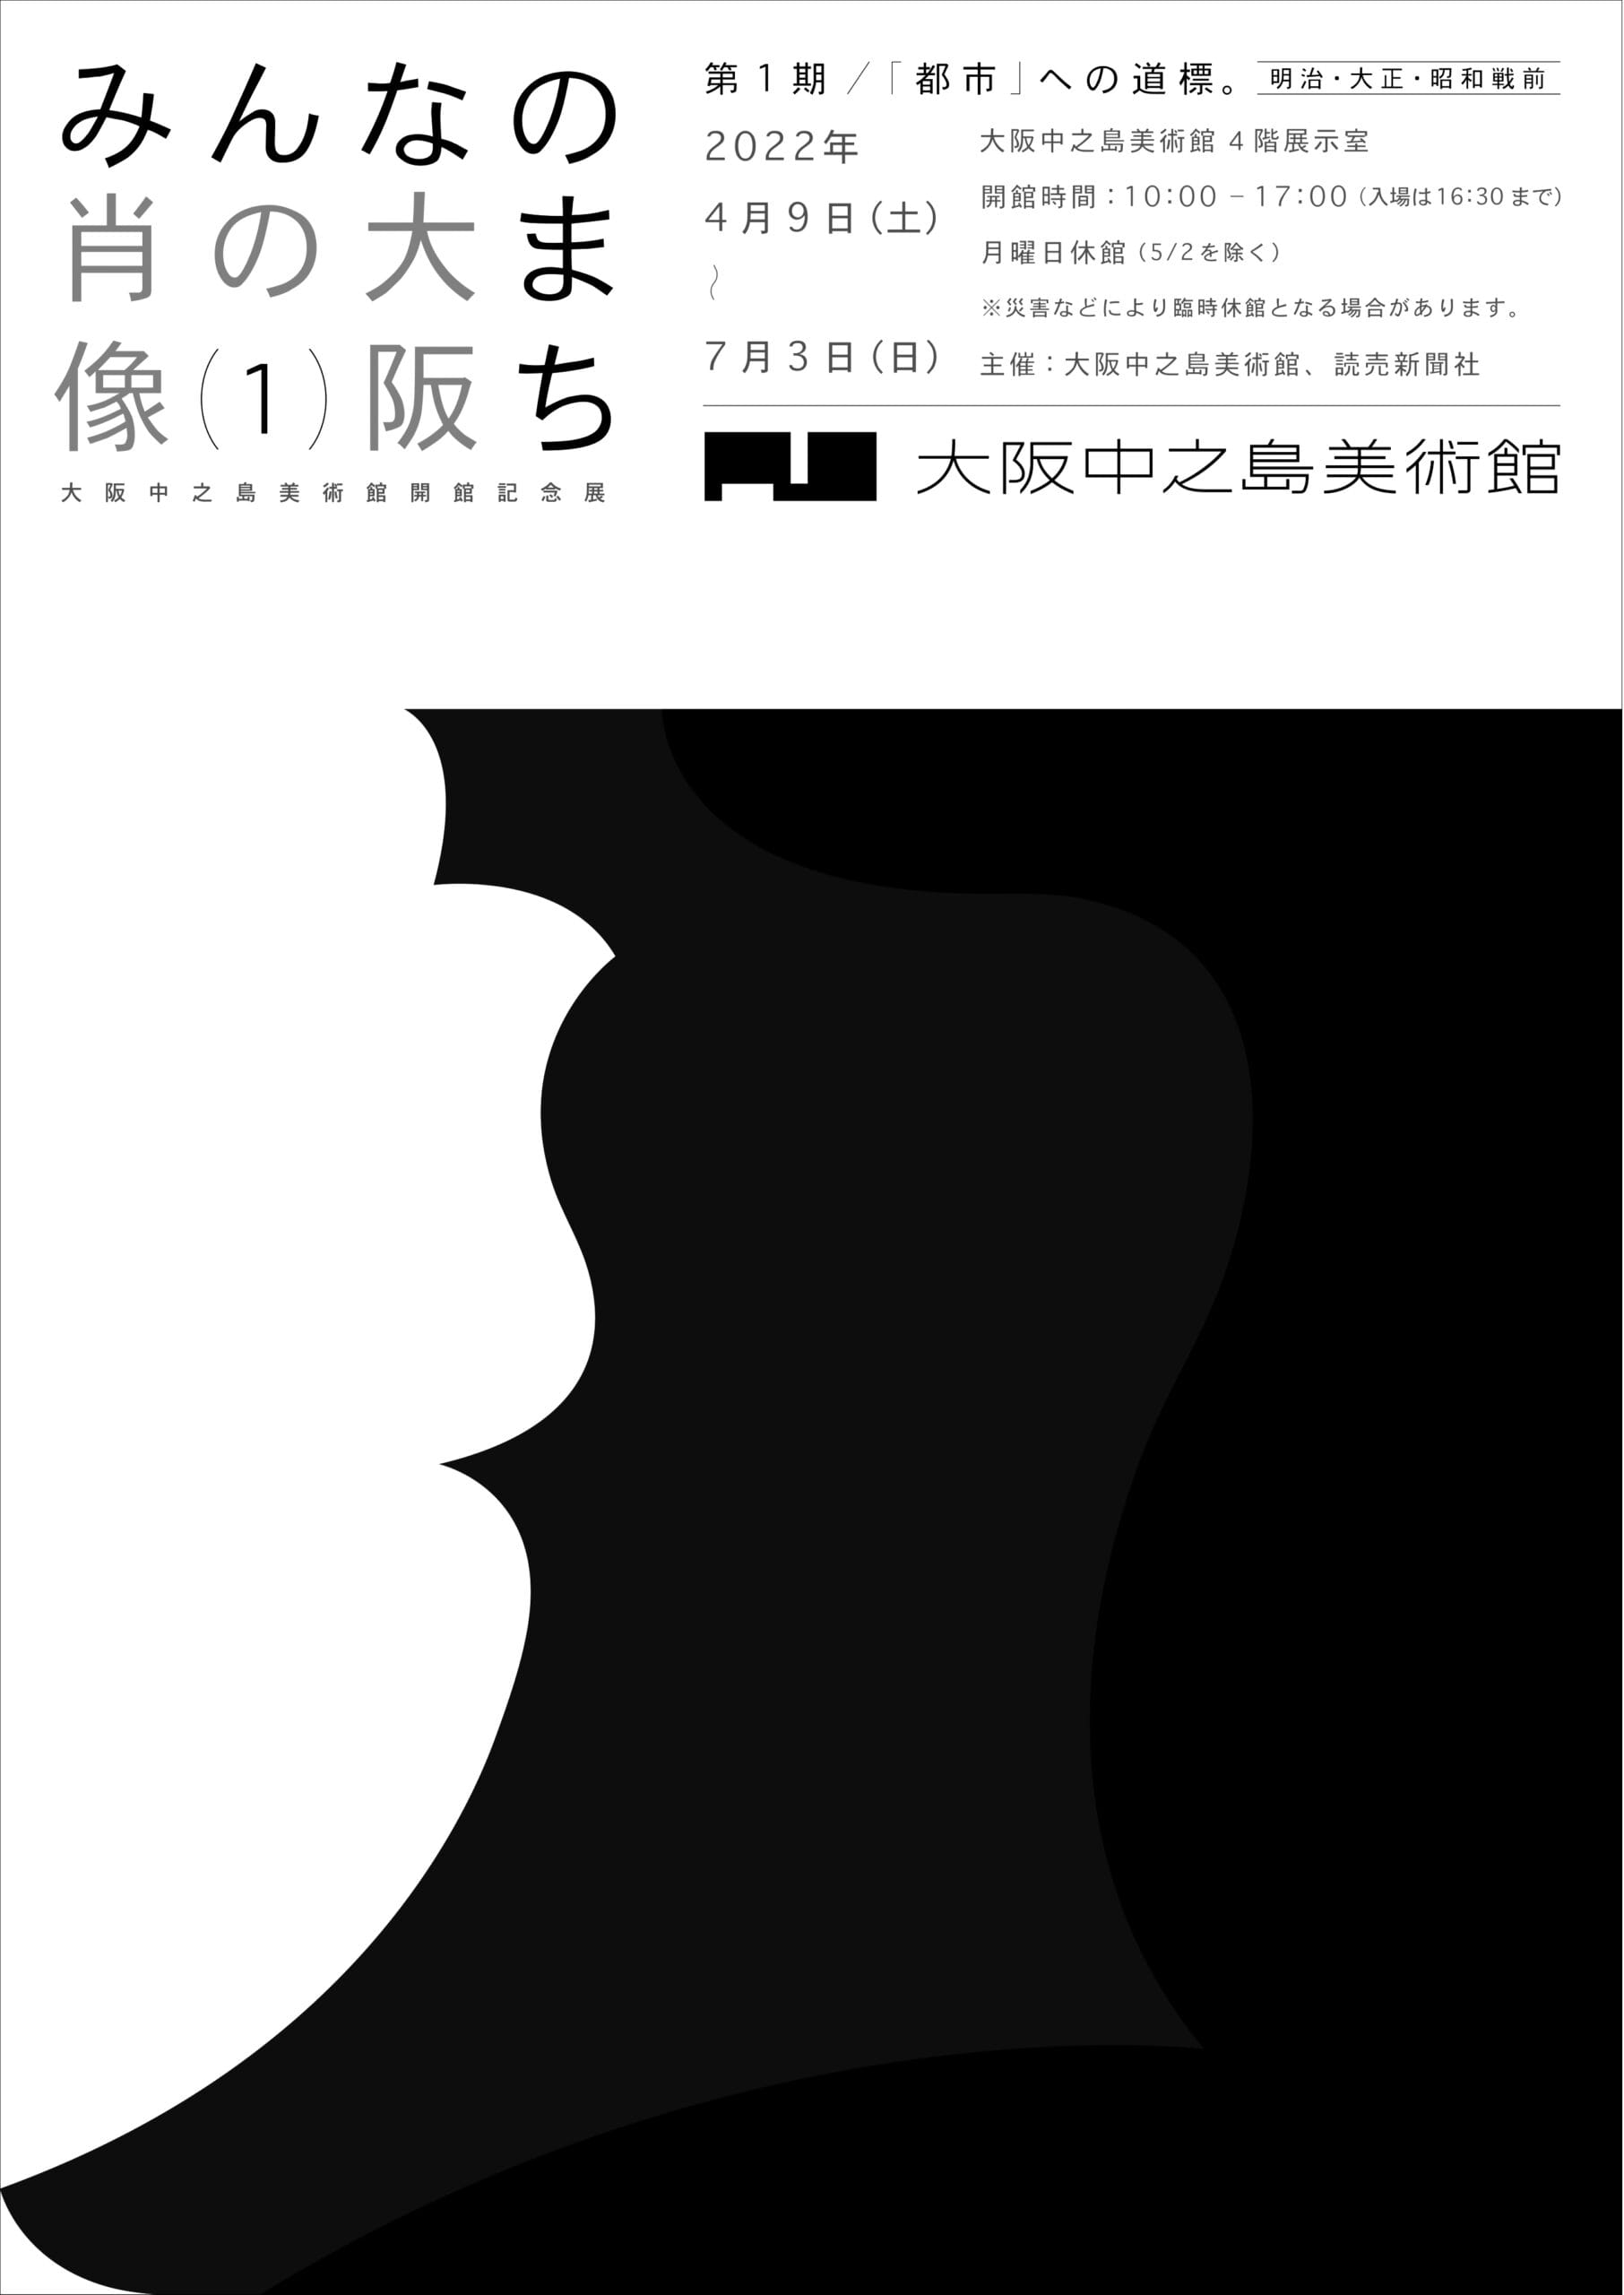 展覧会「みんなのまち 大阪の肖像」、大阪中之島美術館にて。| paperC